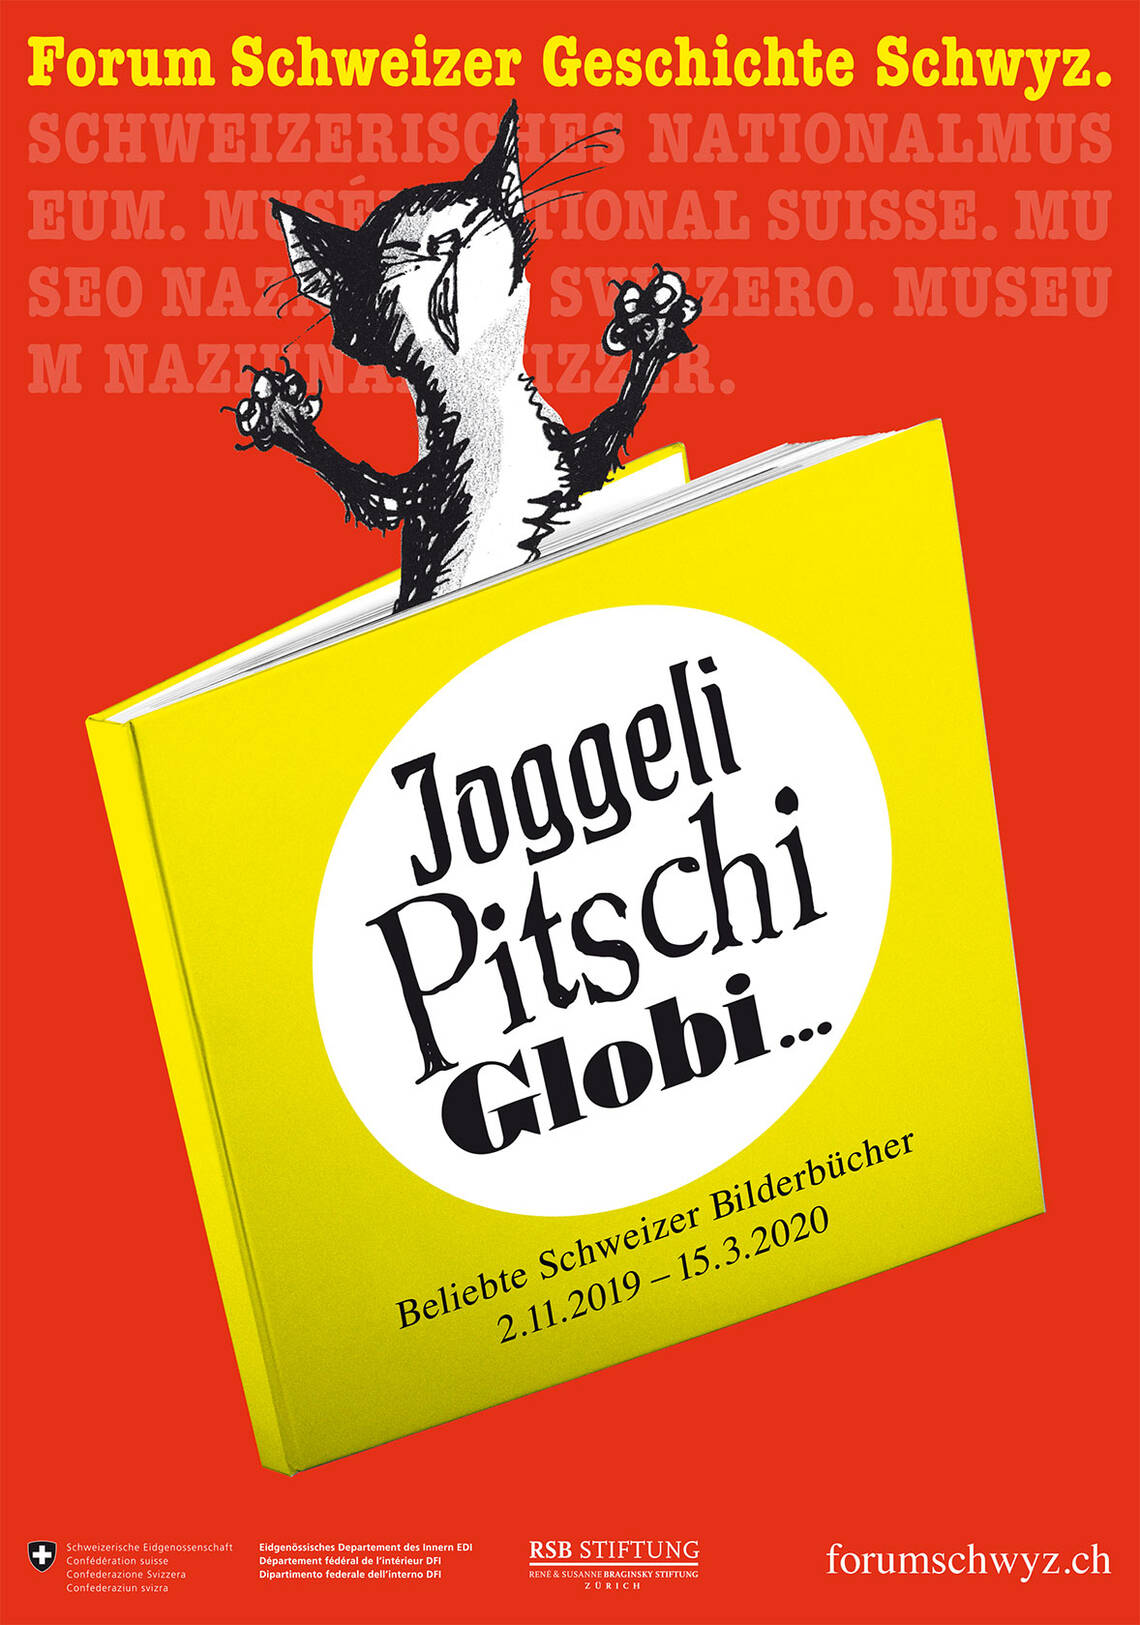 Il key visual della mostra "Joggeli, Pitschi, Globi... libri popolari svizzeri per l'infanzia" mostra un gatto intrappolato in un libro in forma disegnata